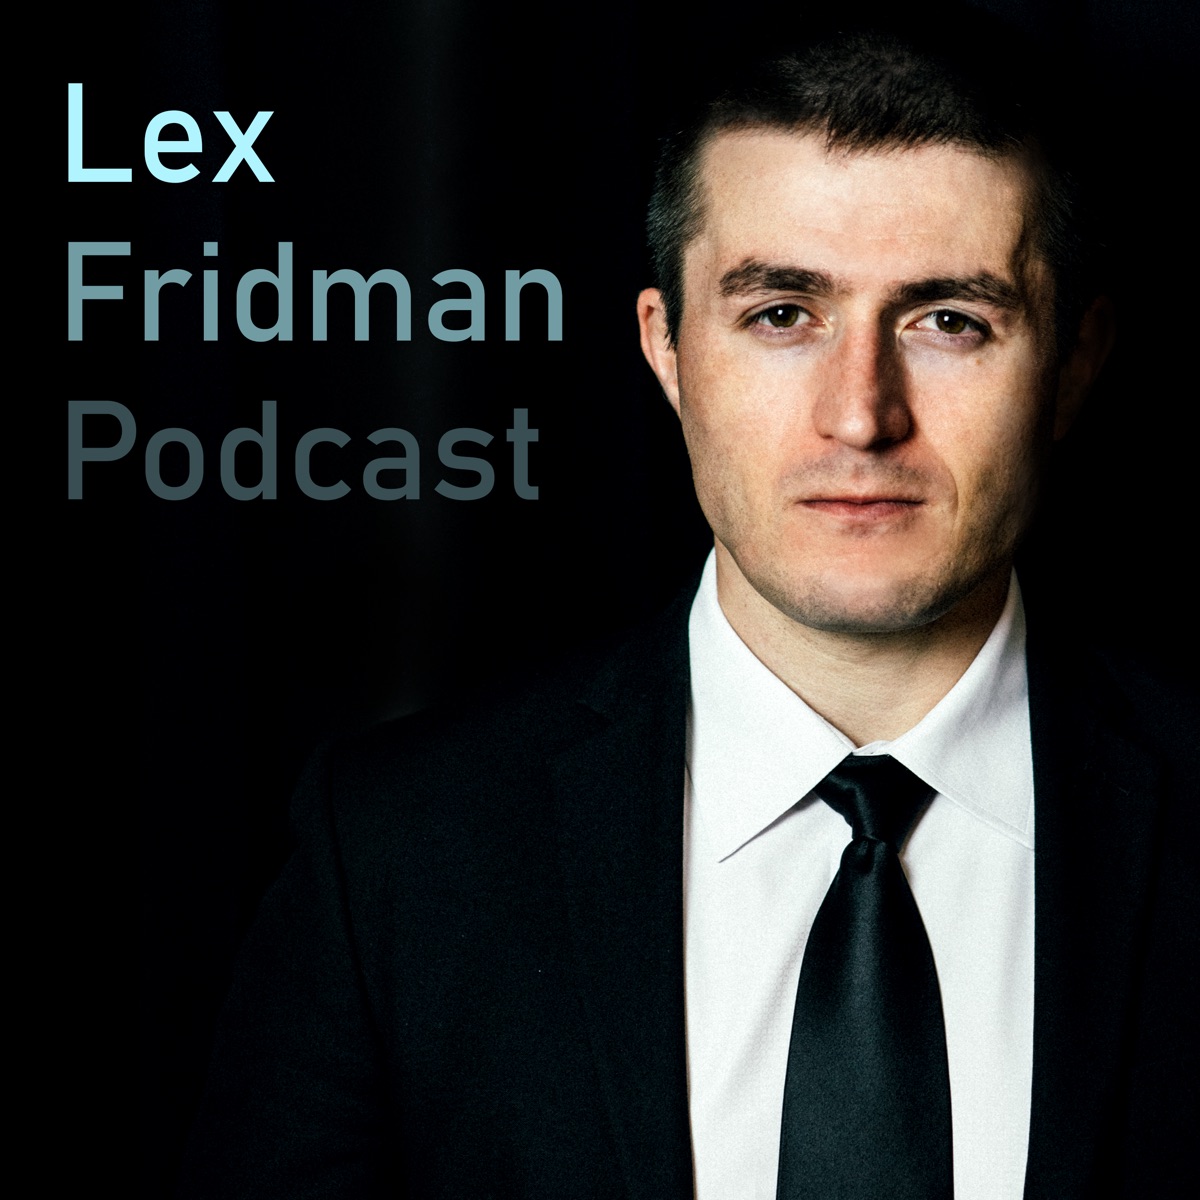 Sam Harris Criticize Lex Fridman for Platforming Kanye West